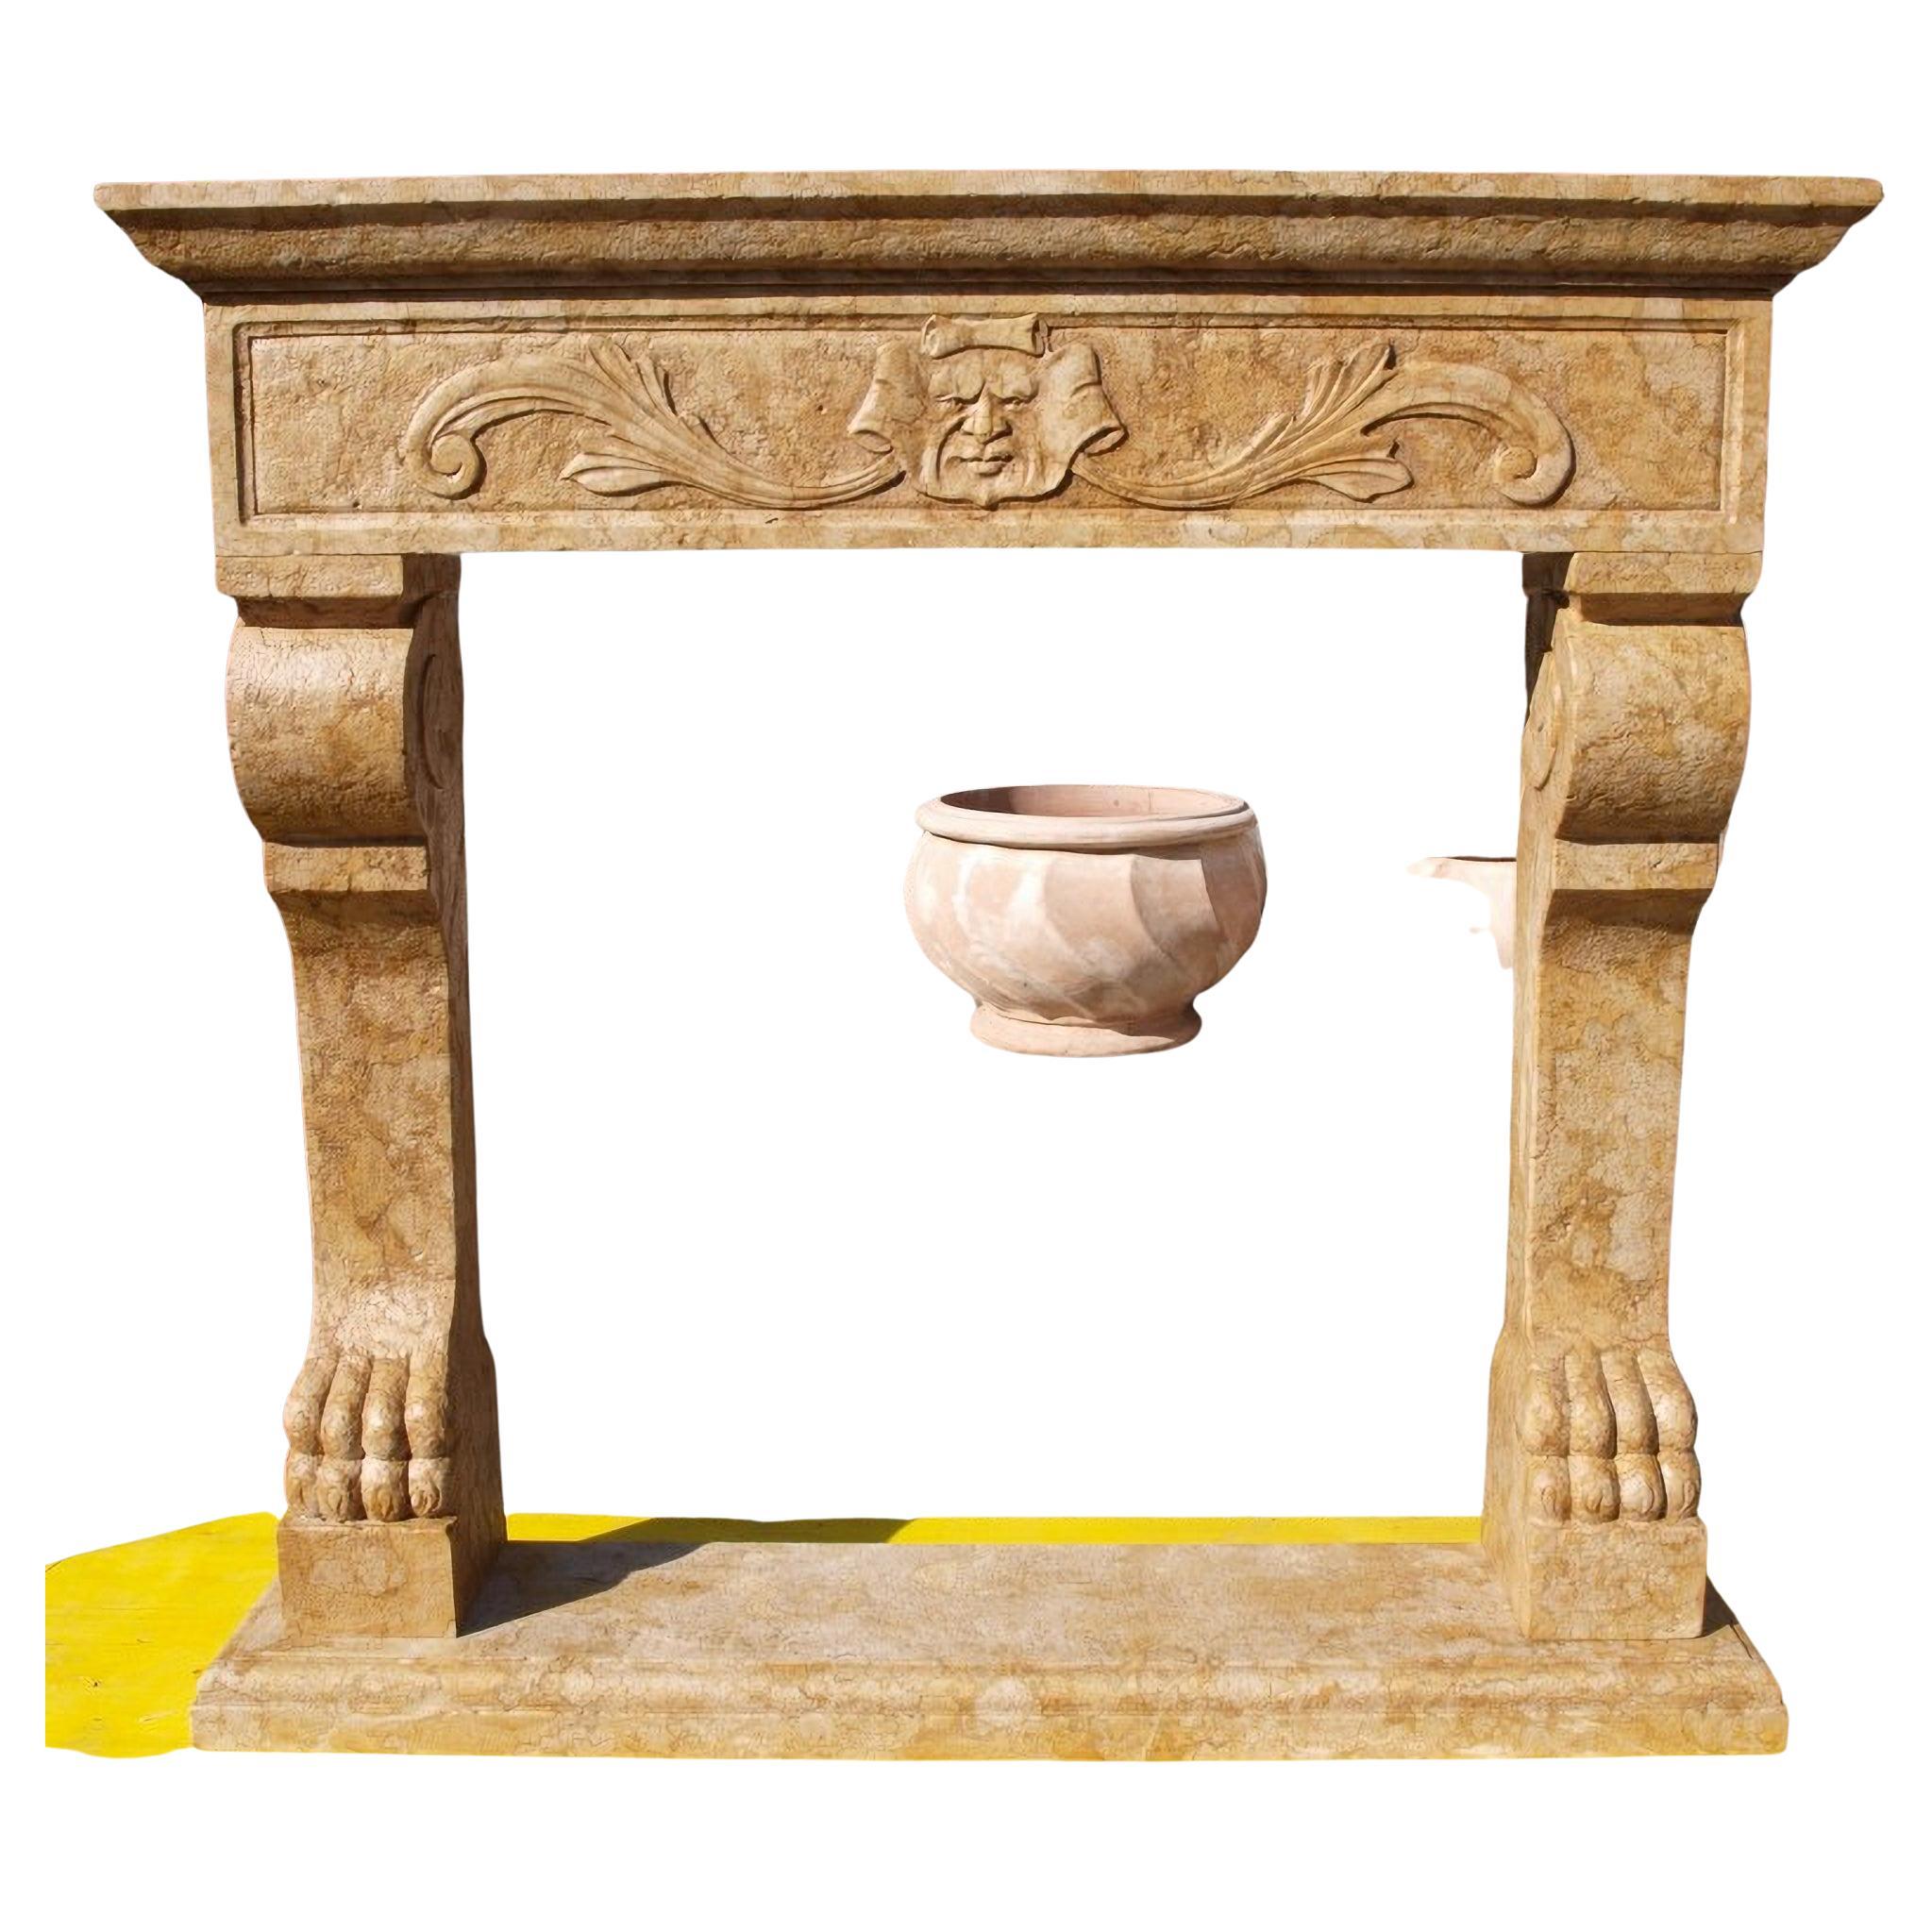 Cheminée italienne en marbre jaune royal
Début du 20e siècle
HAUTEUR 140 cm
LARGEUR 160 cm
PROFONDEUR 25 cm
Conditions parfaites.